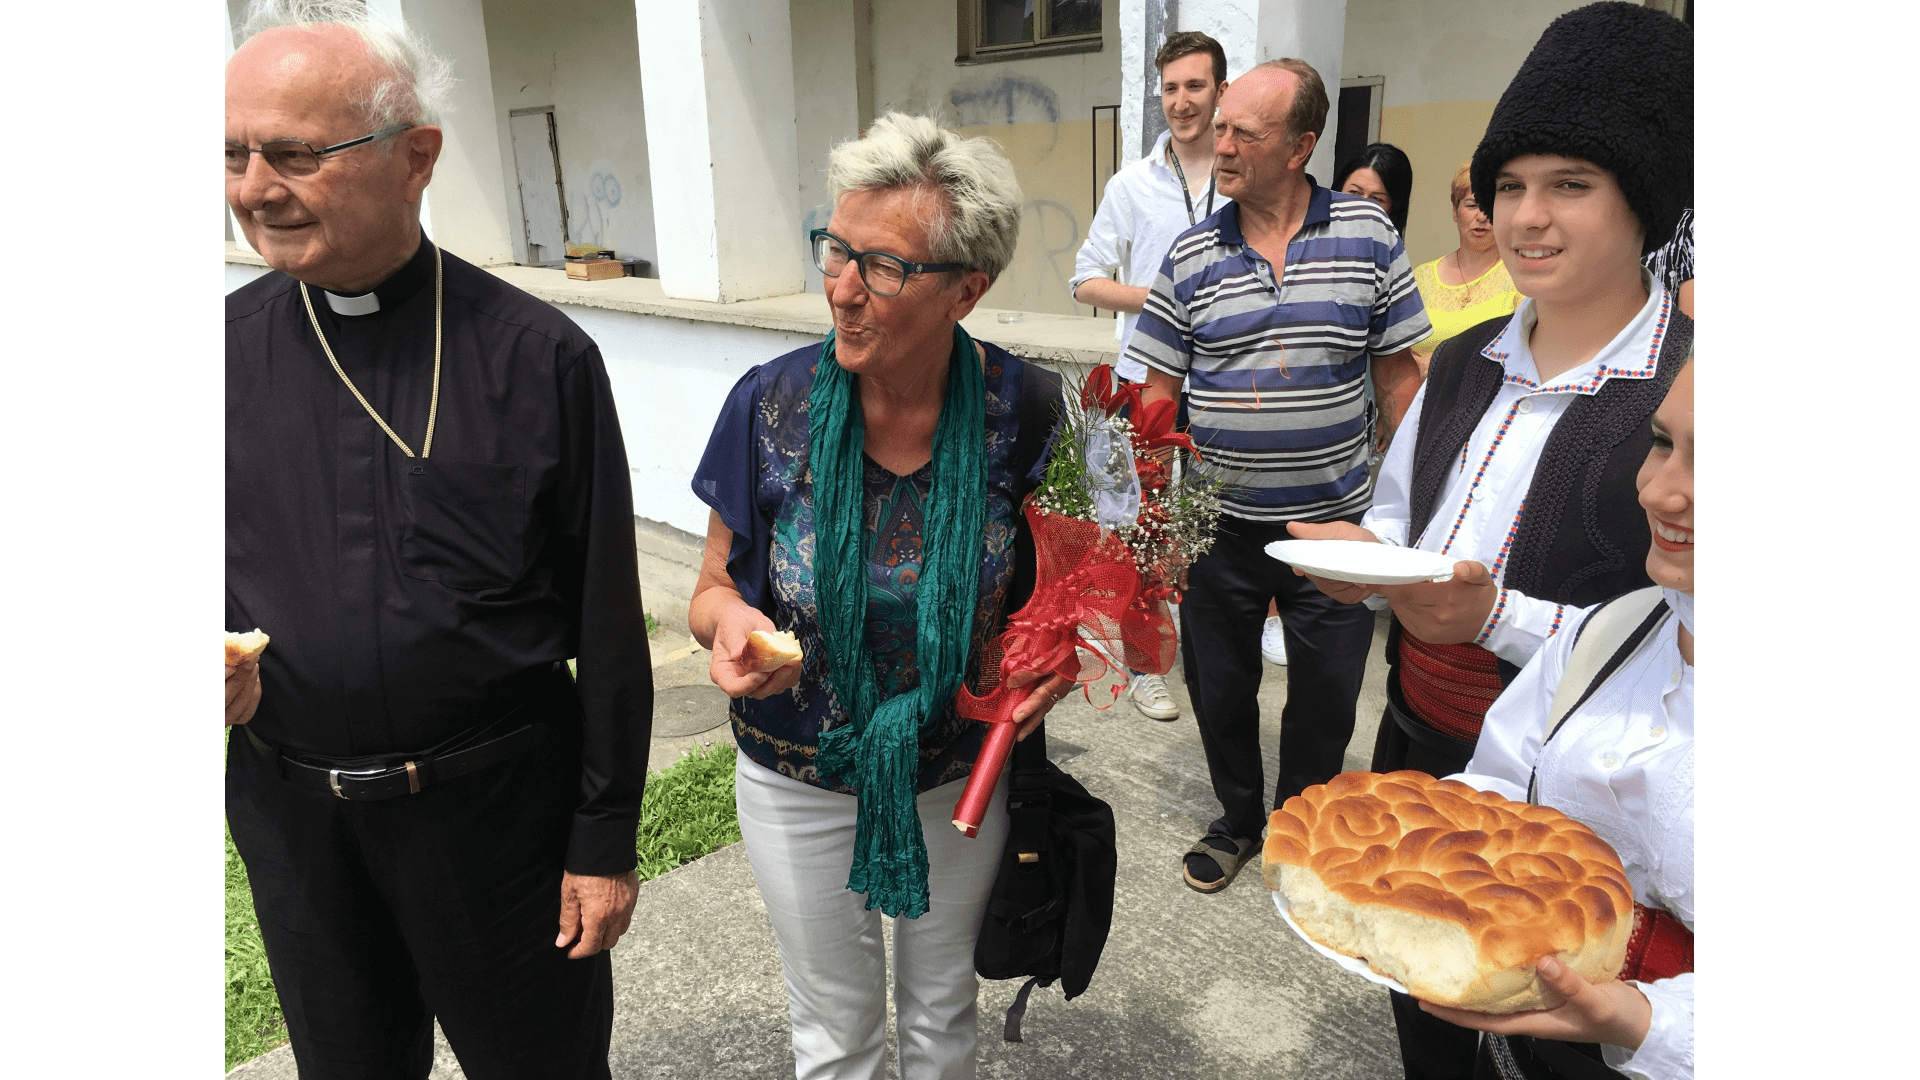 Besuch in Backi Gracac 2016. Empfang mit  Brot und Salz. Foto: Archiv Freundeskreis Filipowa